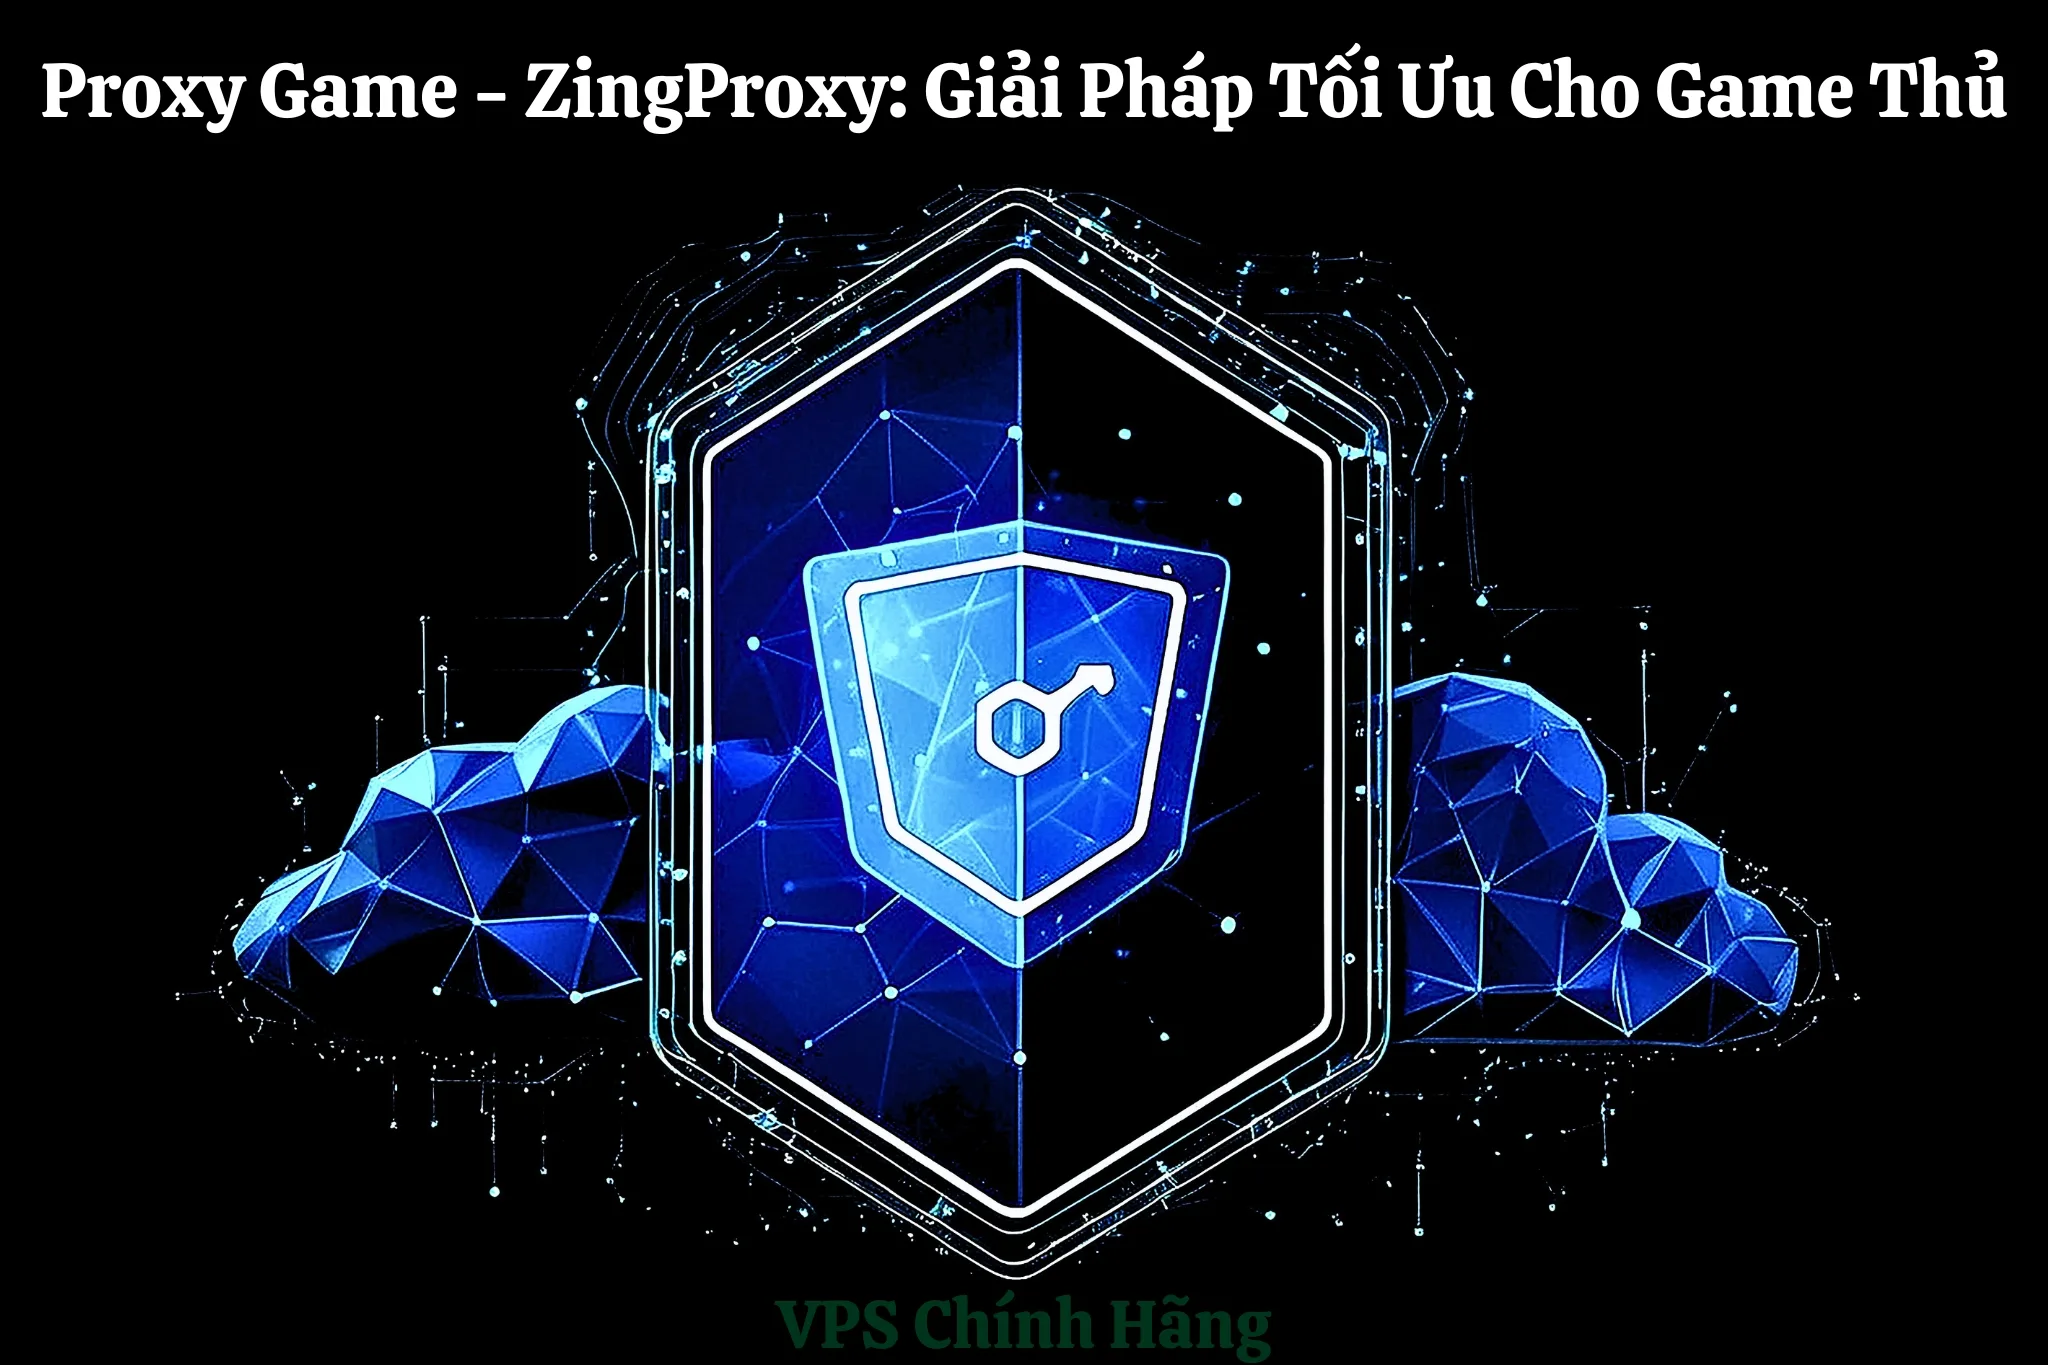 Proxy Game - ZingProxy Giải Pháp Tối Ưu Cho Game Thủ